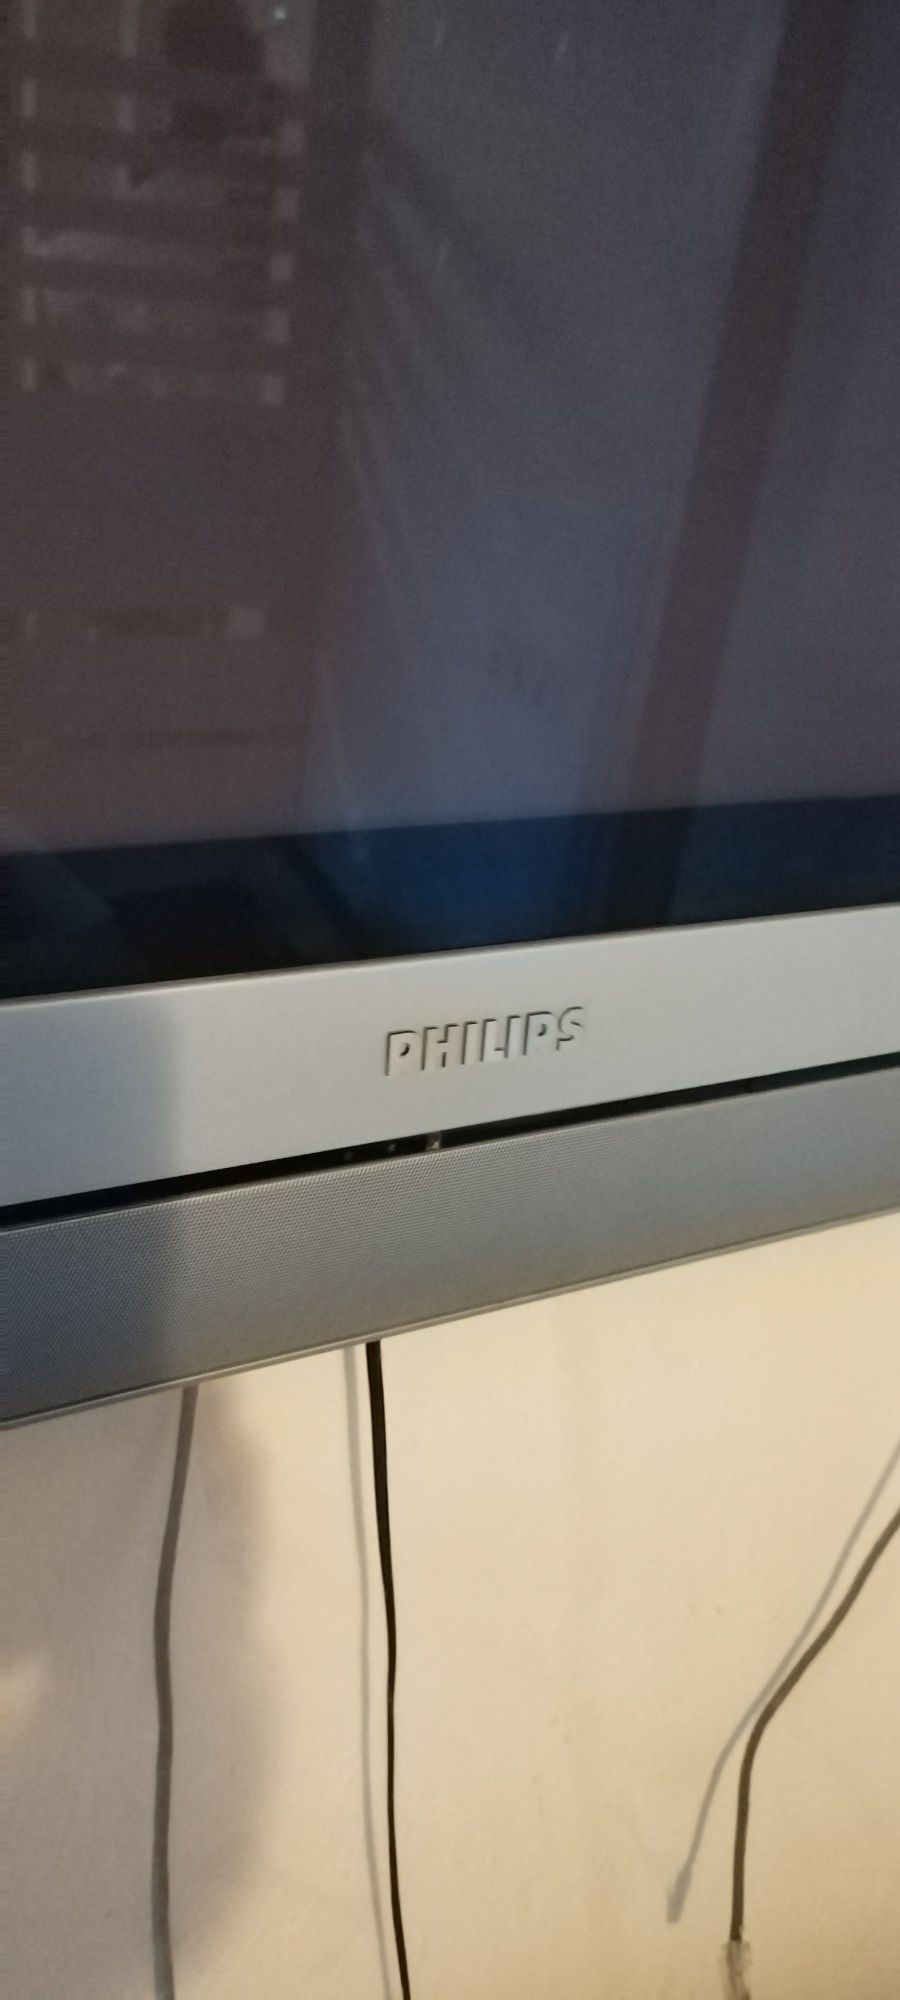 Philips 42pf9966/12